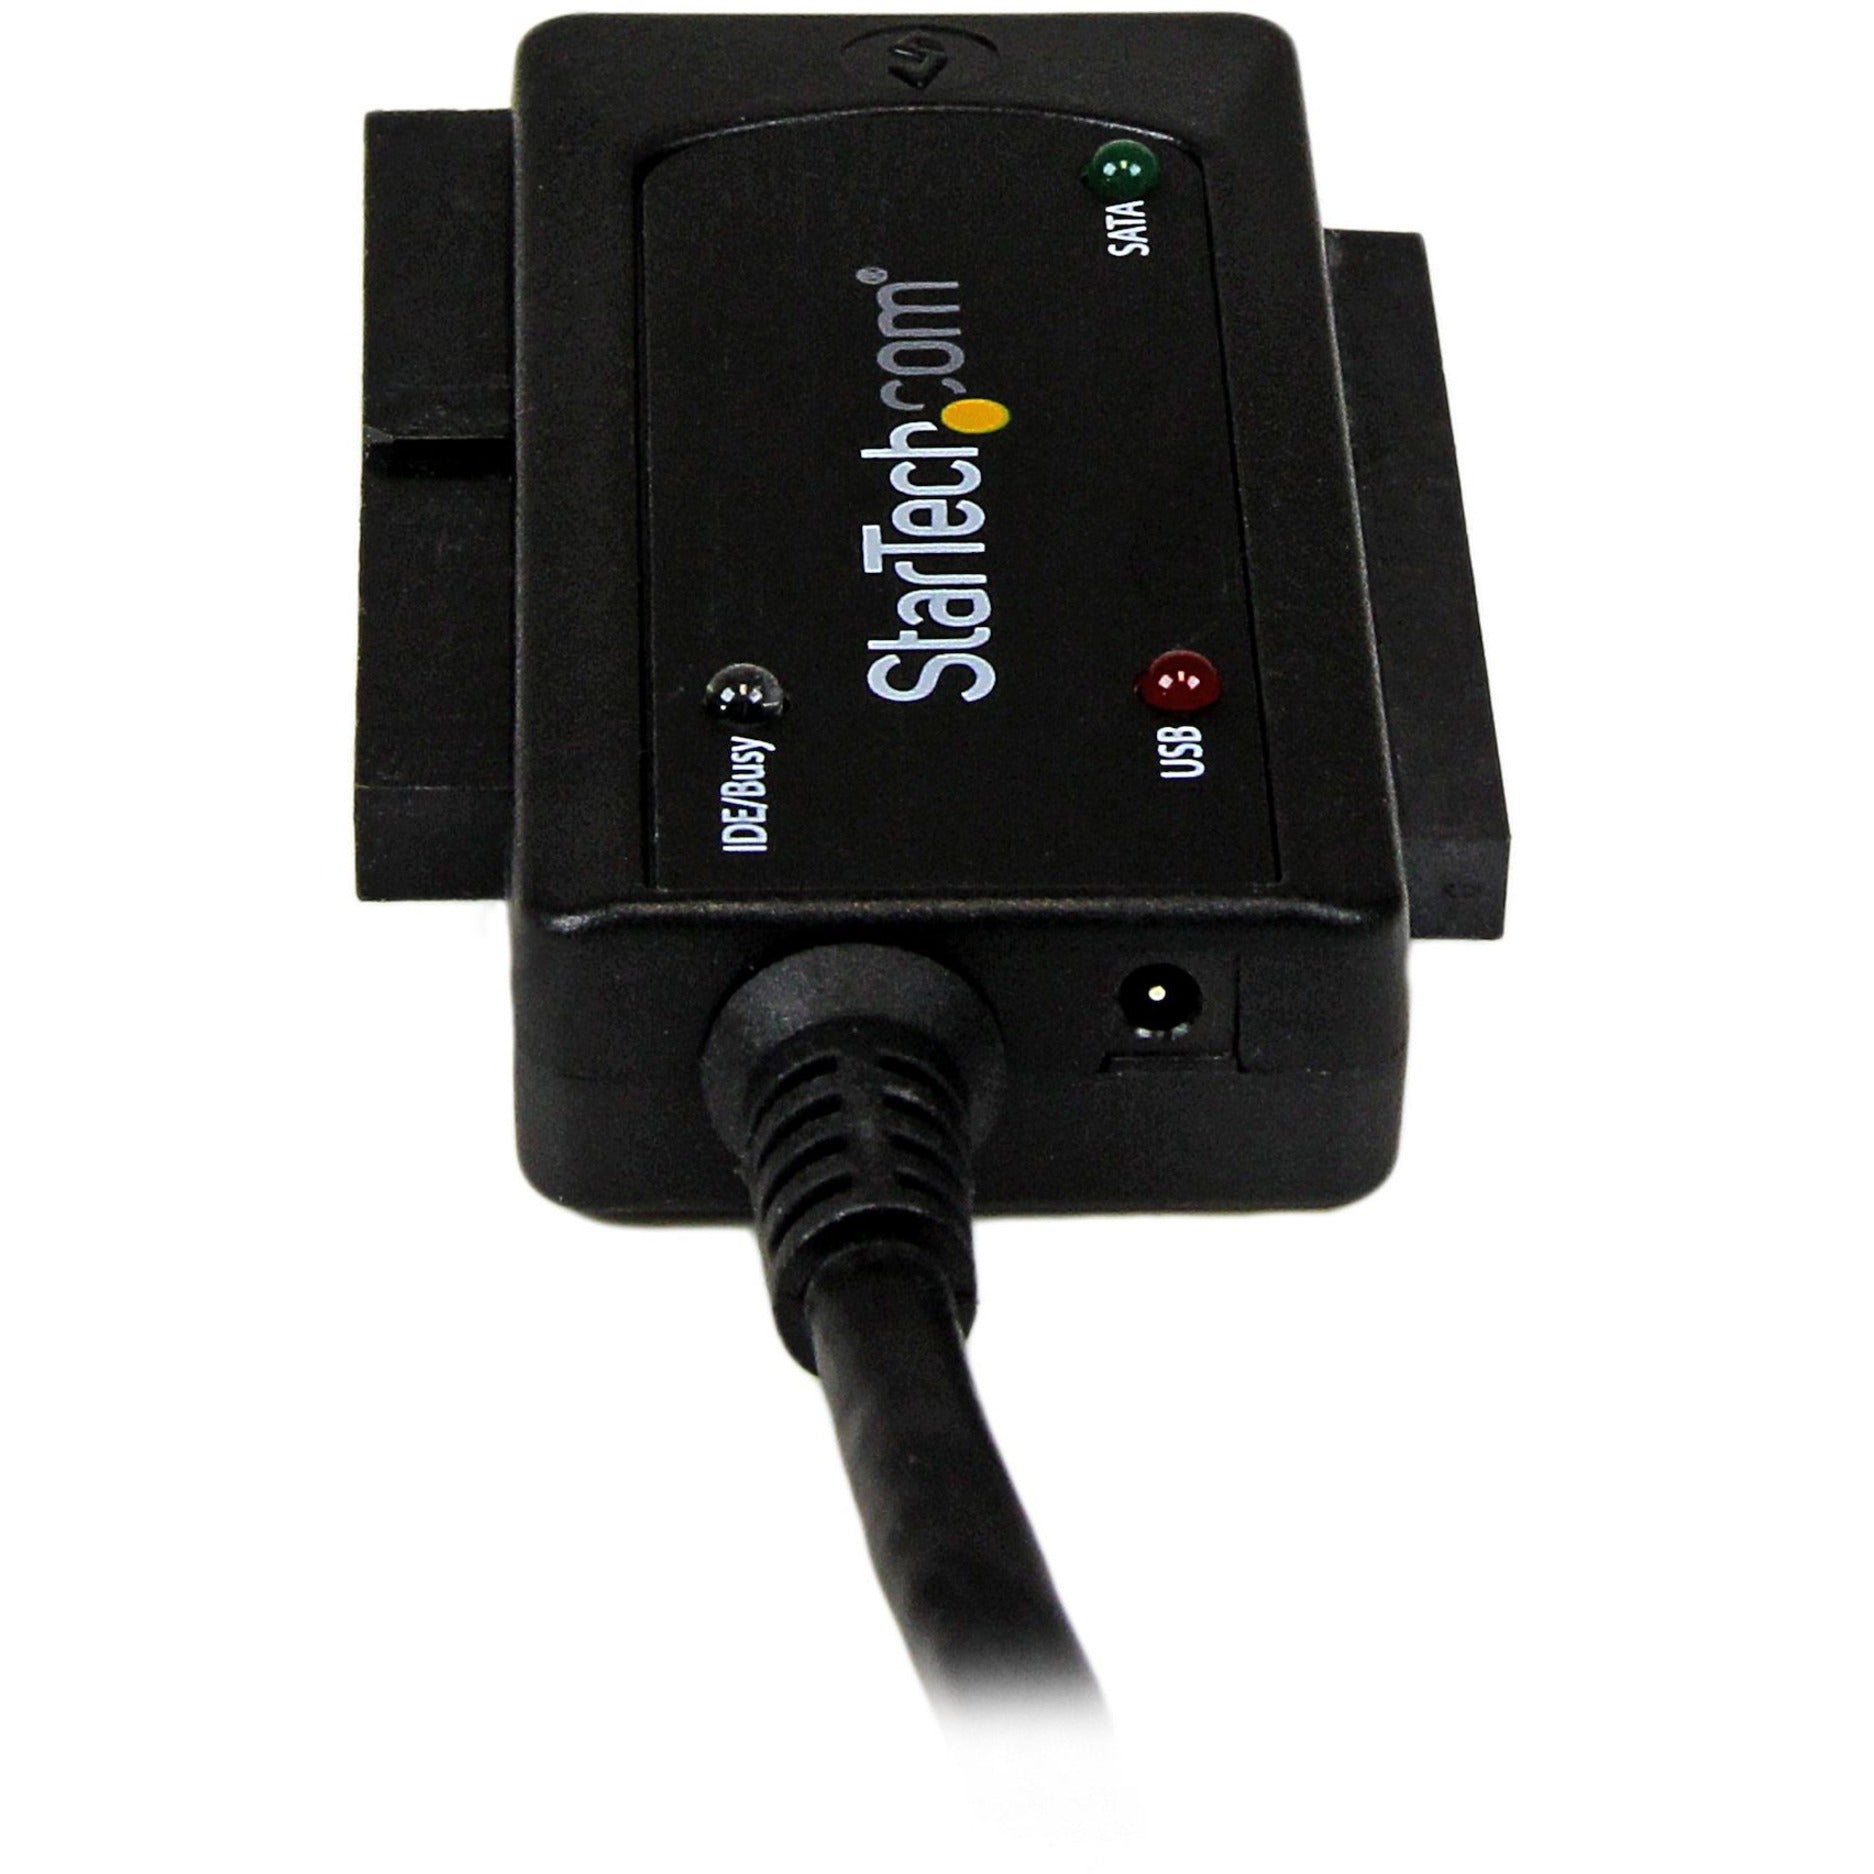 StarTech.com USB3SSATAIDE Convertisseur de disque dur USB 3.0 vers SATA ou IDE Transfert de données haute vitesse